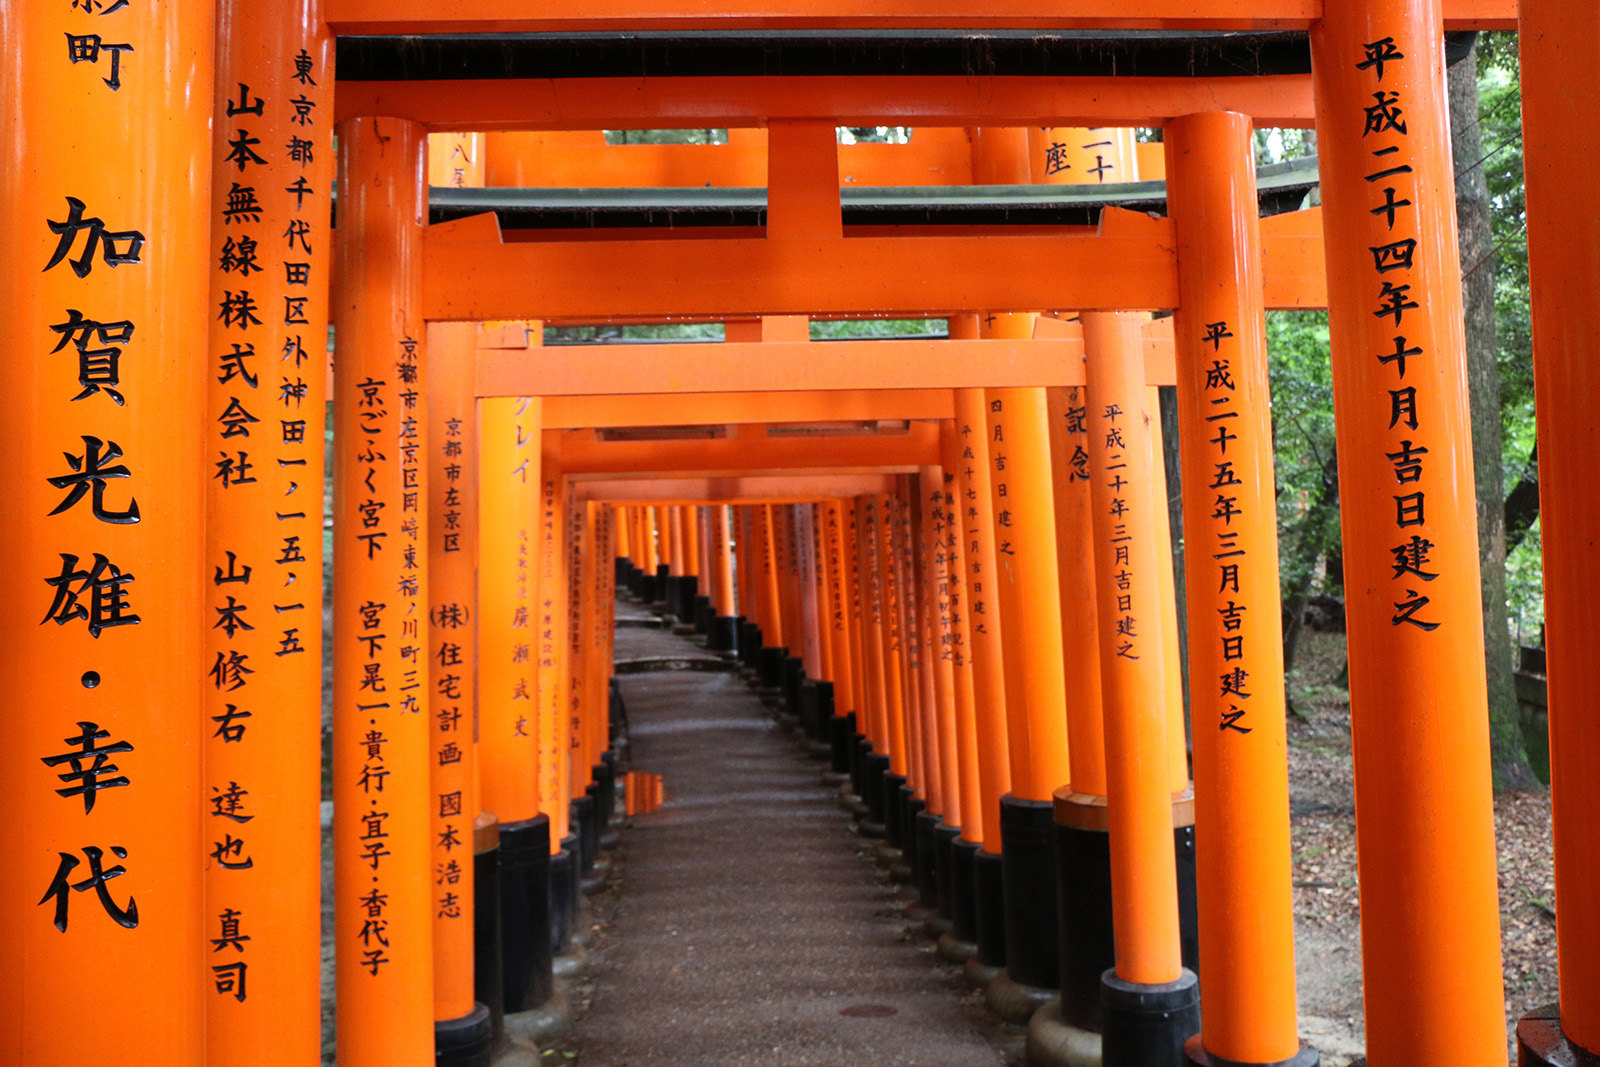 【携程攻略】京都伏见稻荷大社景点,日本伏见稻荷大社建于8世纪，主要是祀奉以宇迦之御魂大神为首的诸位…